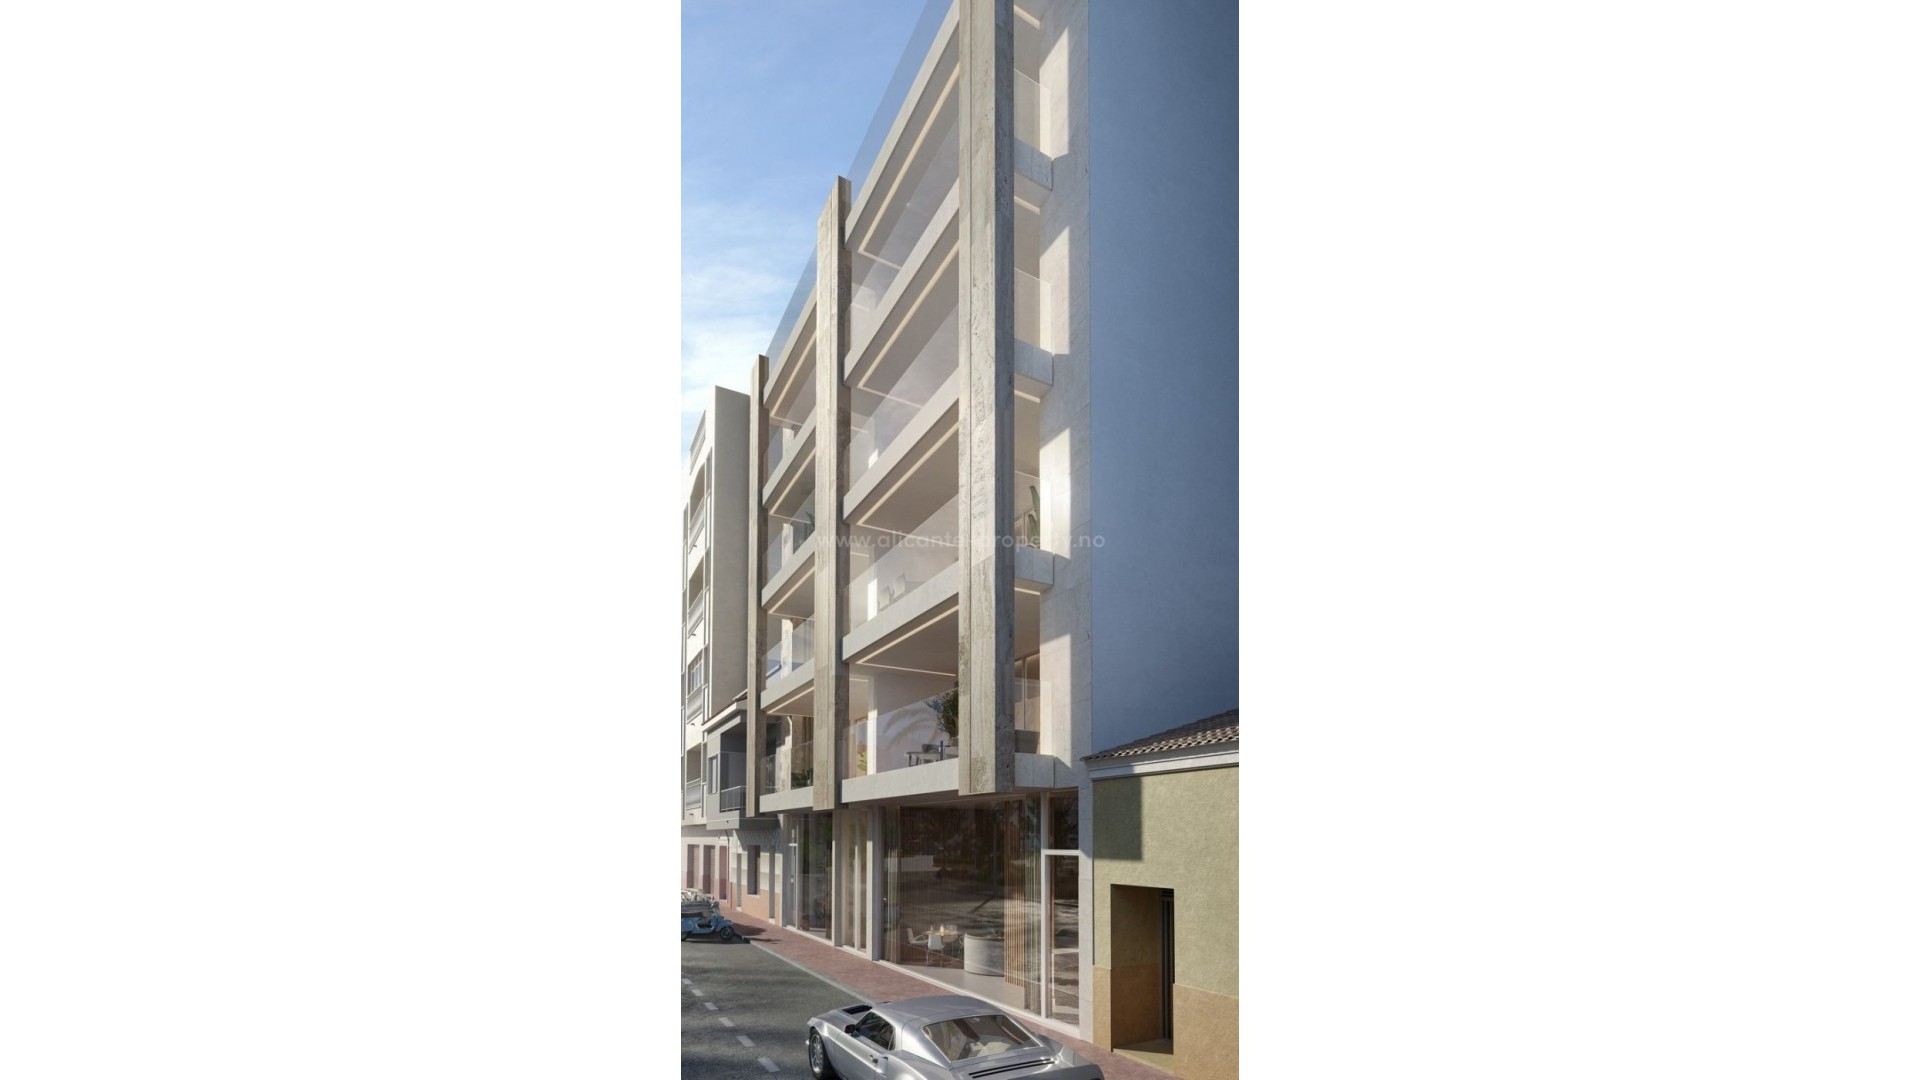 Penthouse-leiligheter i La Mata,Torrevieja, 3 soverom, 2 bad, stor felles takterrasse med jacuzzi og vestvendt utsikt, underjordiske parkeringsplasser